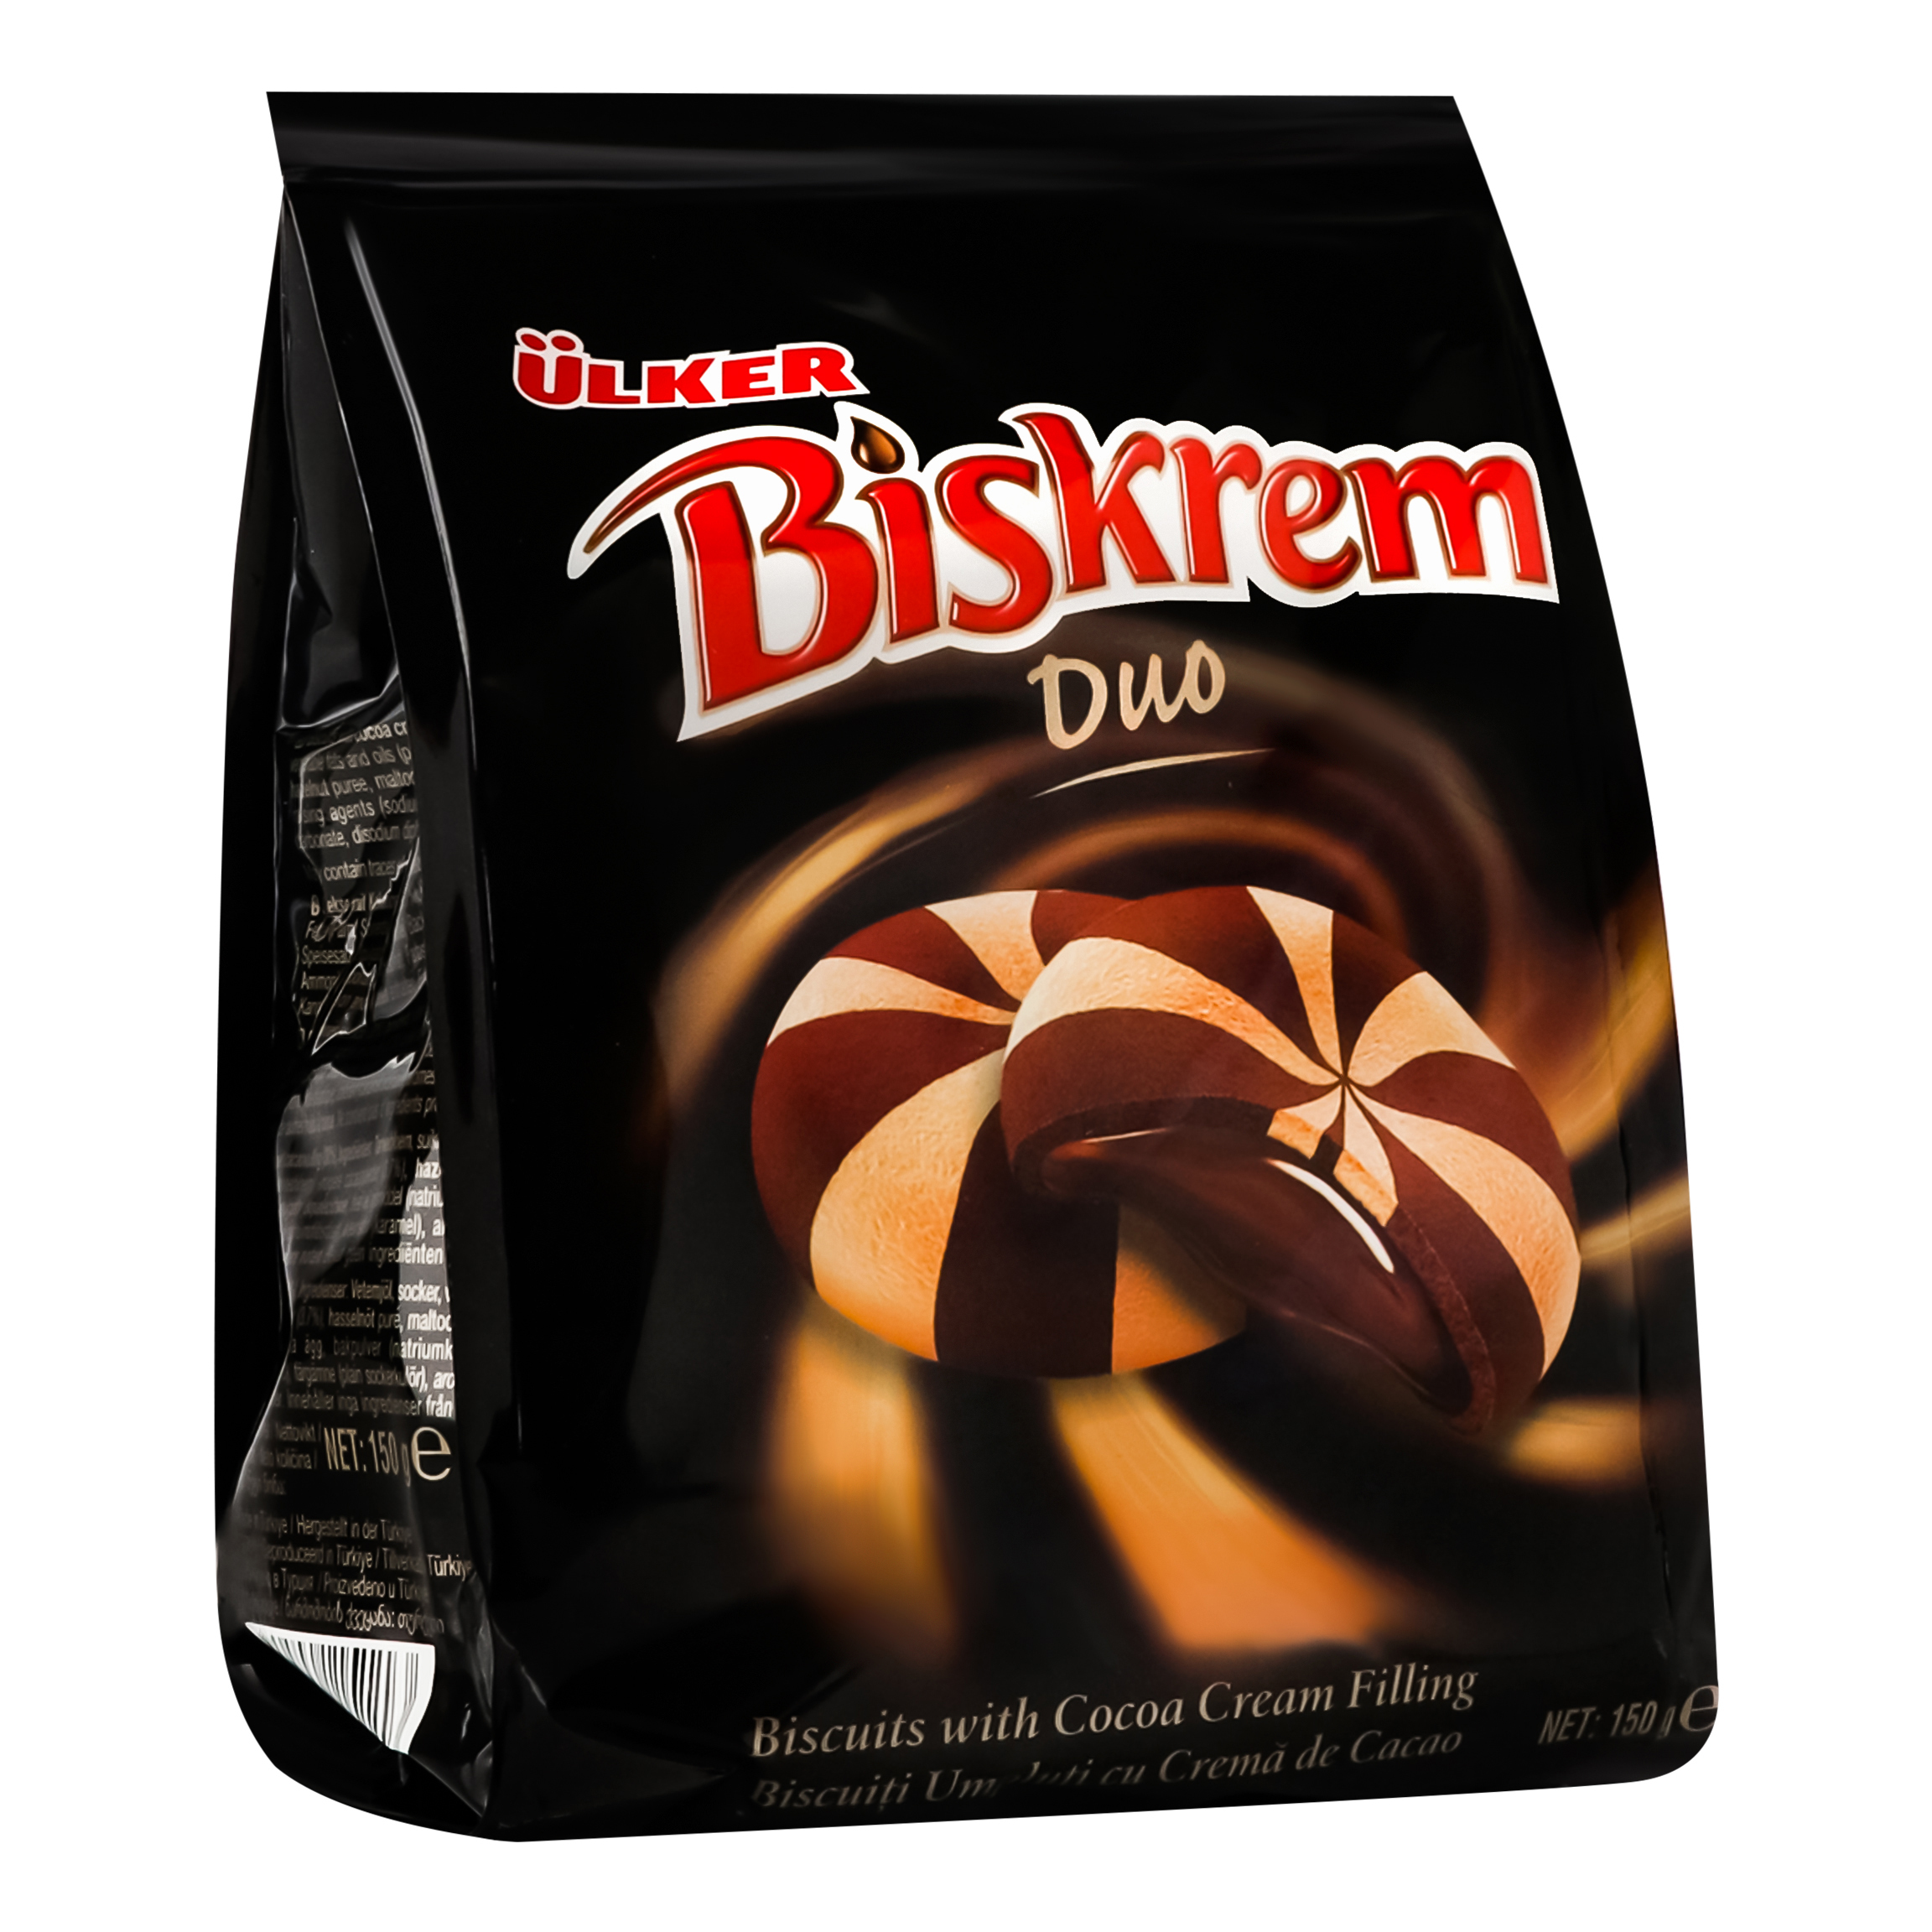 Печенье Ulker Biskrem Duo с какао-кремом 150 г (895519) - фото 4